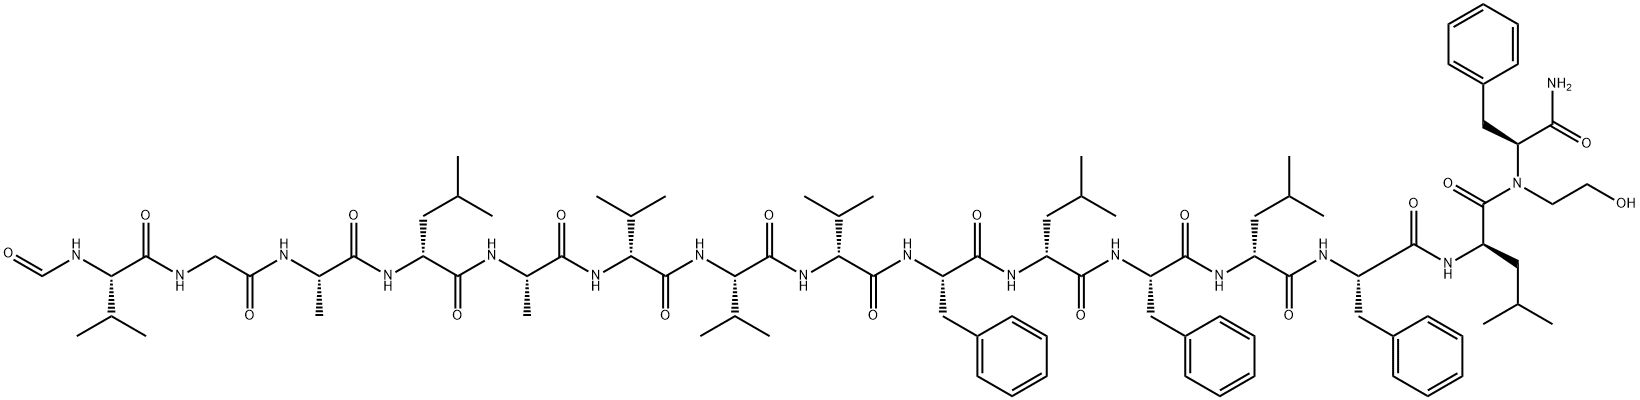 15-Des-trp-phe-gramicidin A Structure